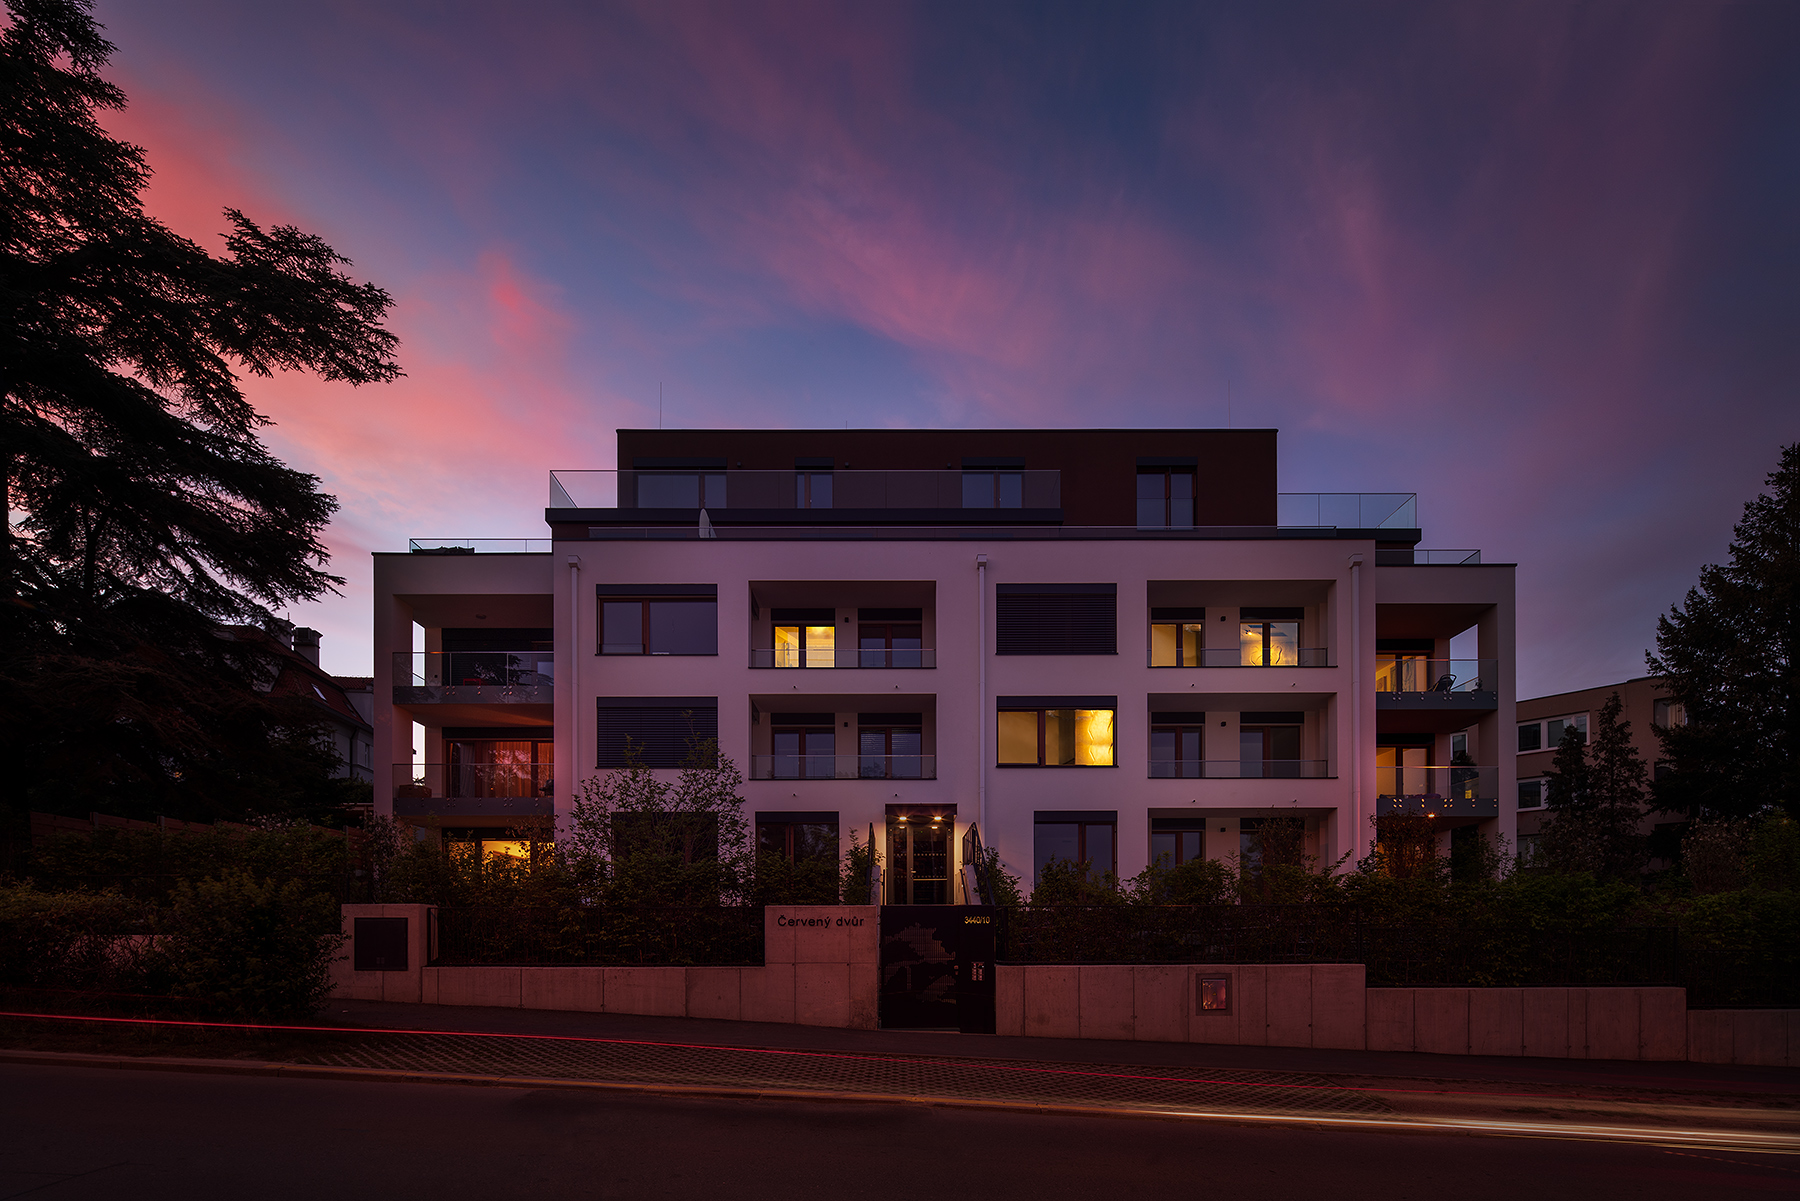 Energeticky úsporný projekt Rezidence Červený dvůr získal Cenu CraftEdu bytovému domu v pasivním standardu v soutěži Stavba roku 2020